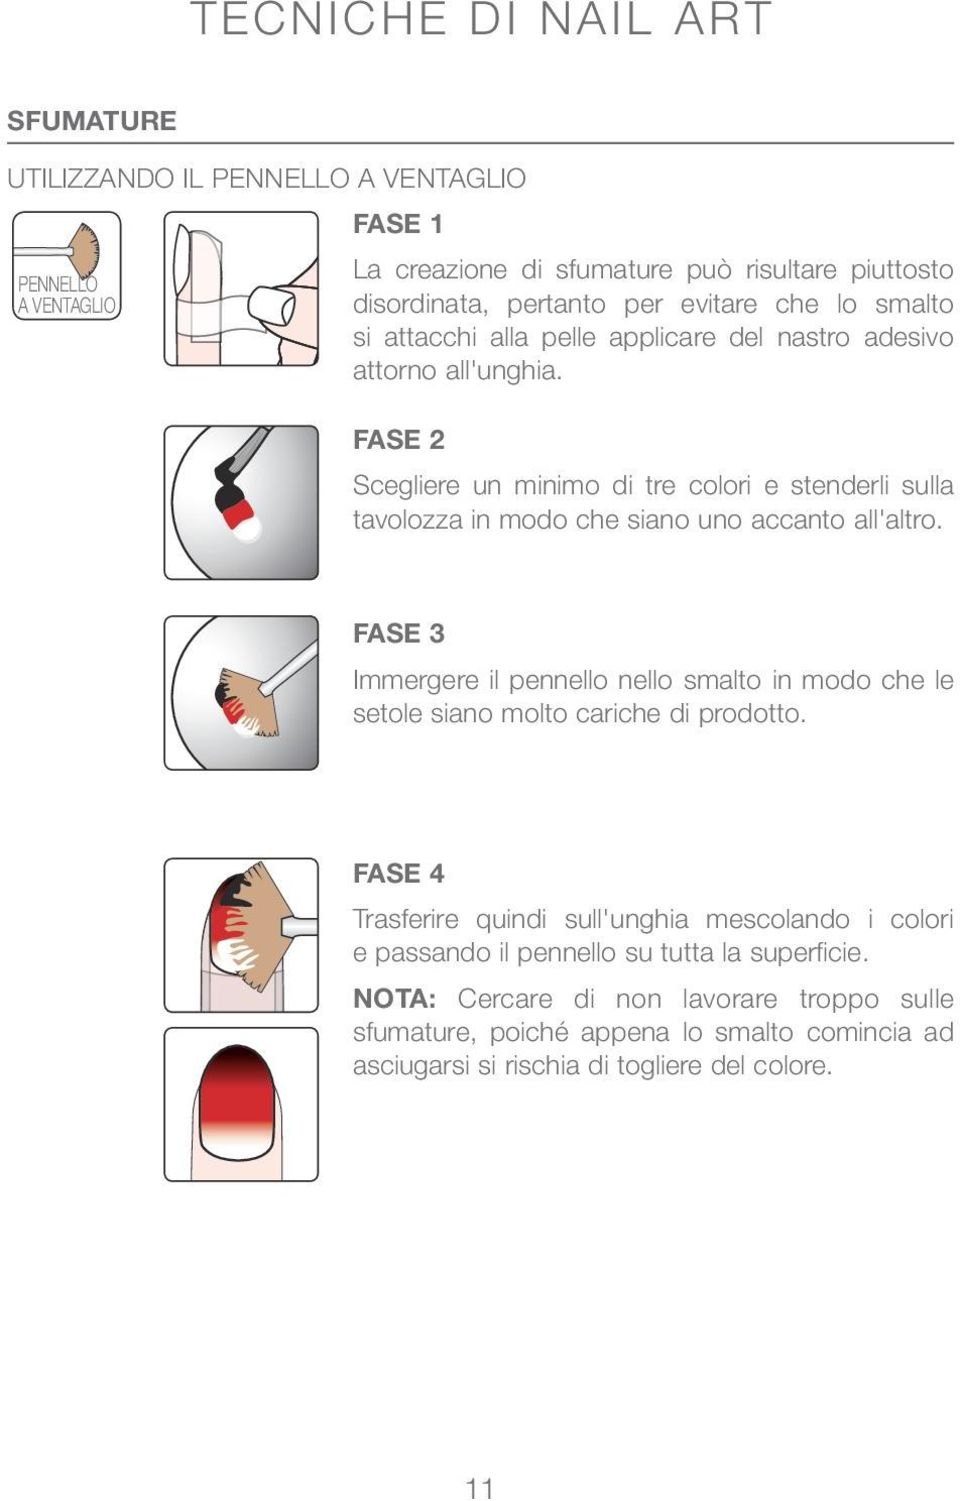 FASE 2 Scegliere un minimo di tre colori e stenderli sulla tavolozza in modo che siano uno accanto all'altro.